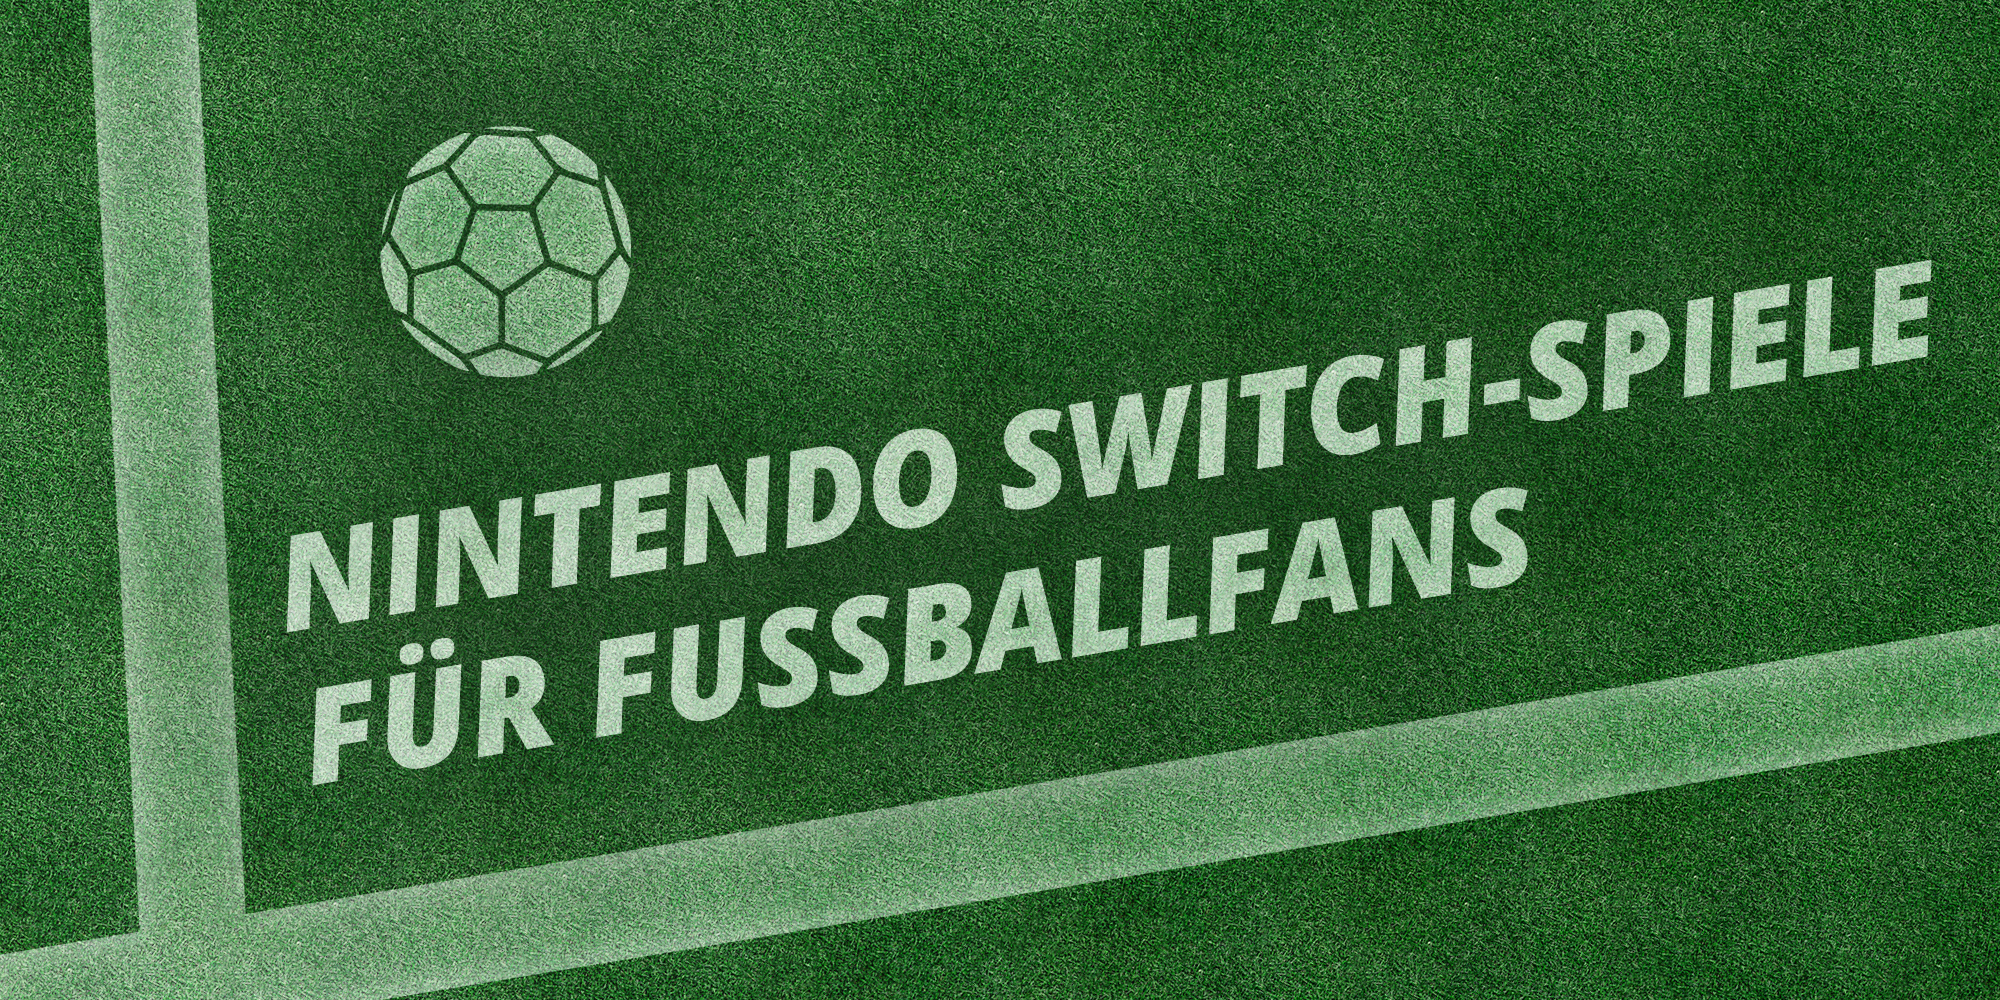 Nintendo Switch-Spiele für Fußballfans